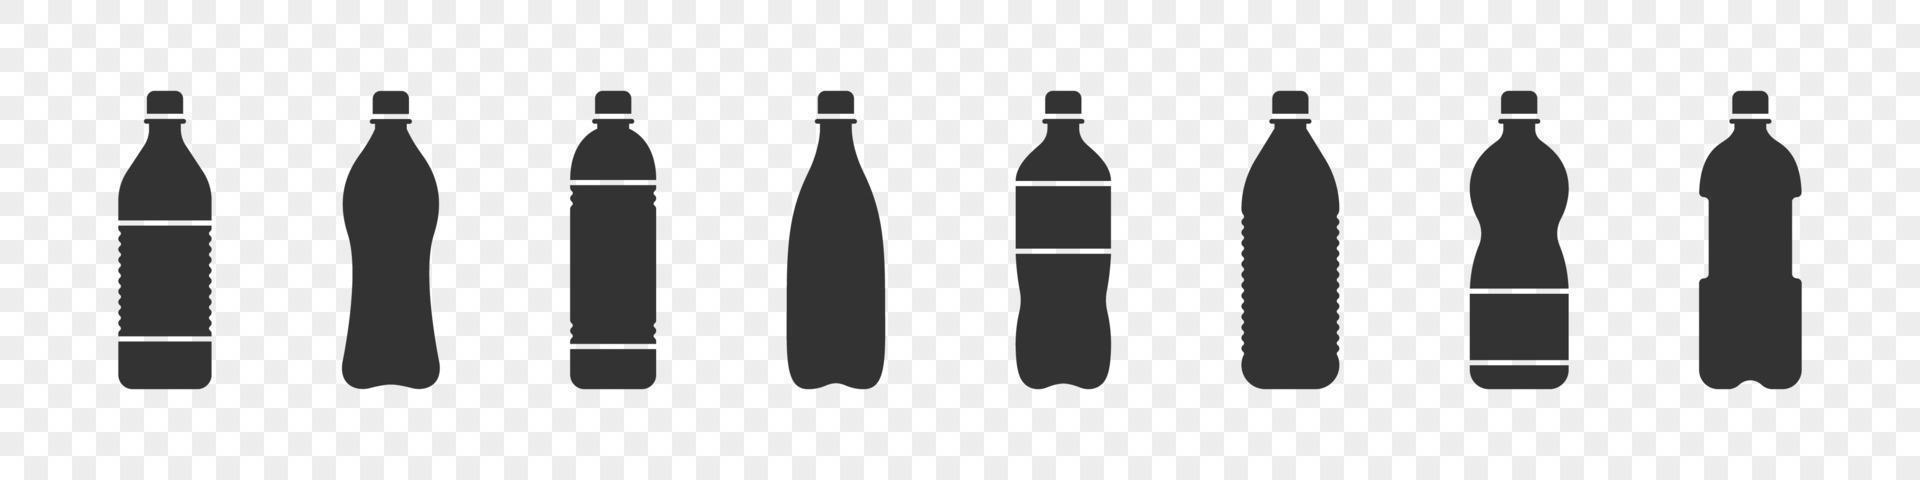 acqua bottiglie. plastica bottiglia collezione. piatto vettore acqua bottiglie icone. vettore illustrazione